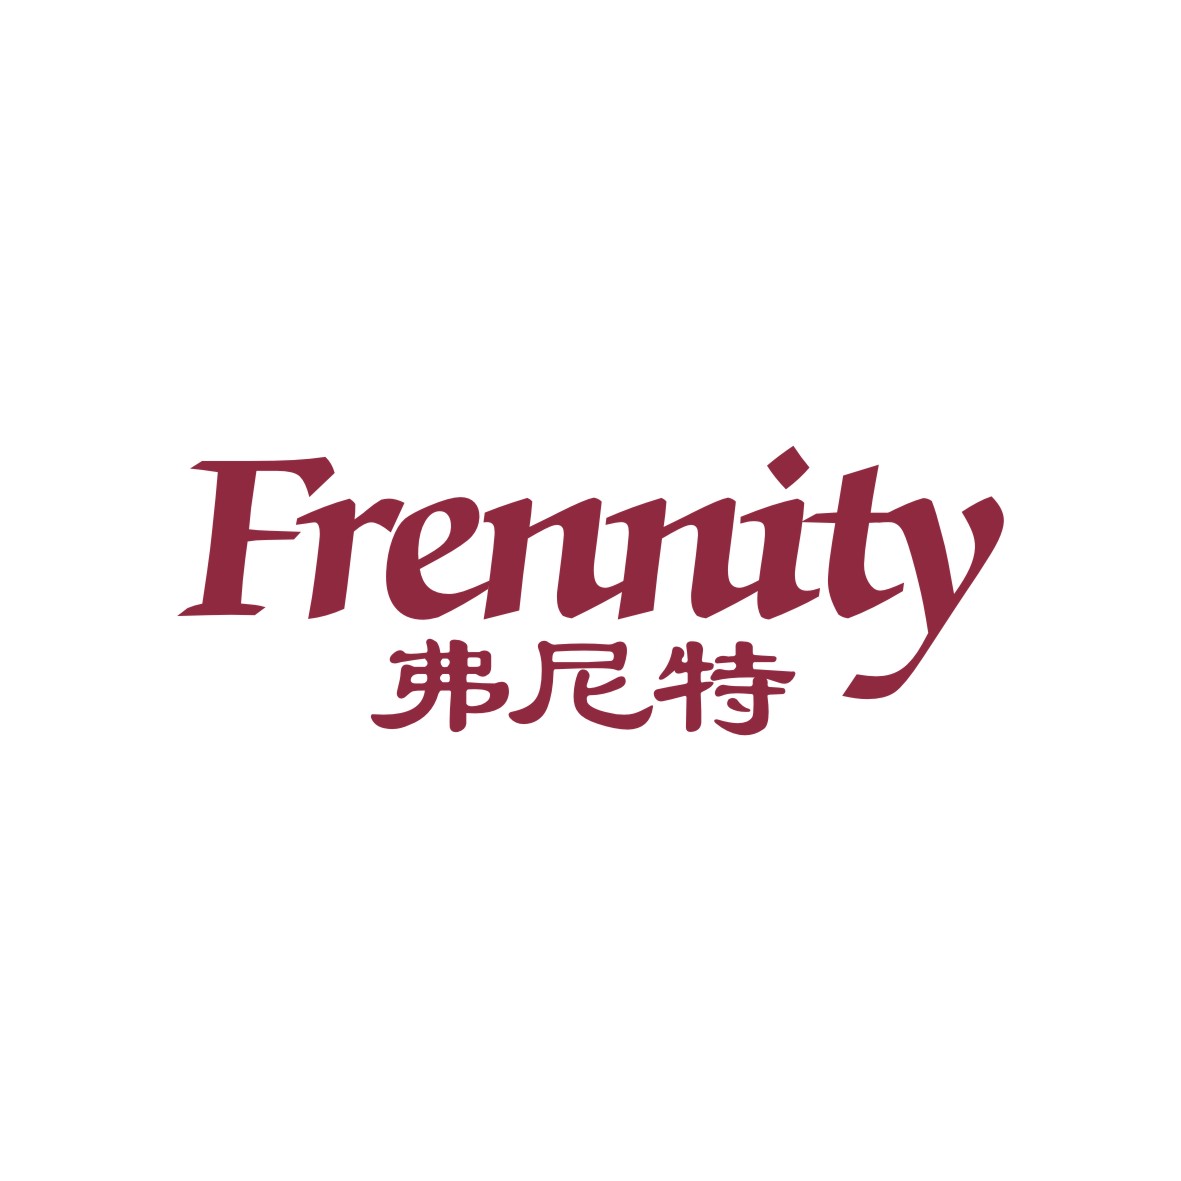 广州知麦网络科技有限公司商标弗尼特 FRENNITY（03类）商标买卖平台报价，上哪个平台最省钱？